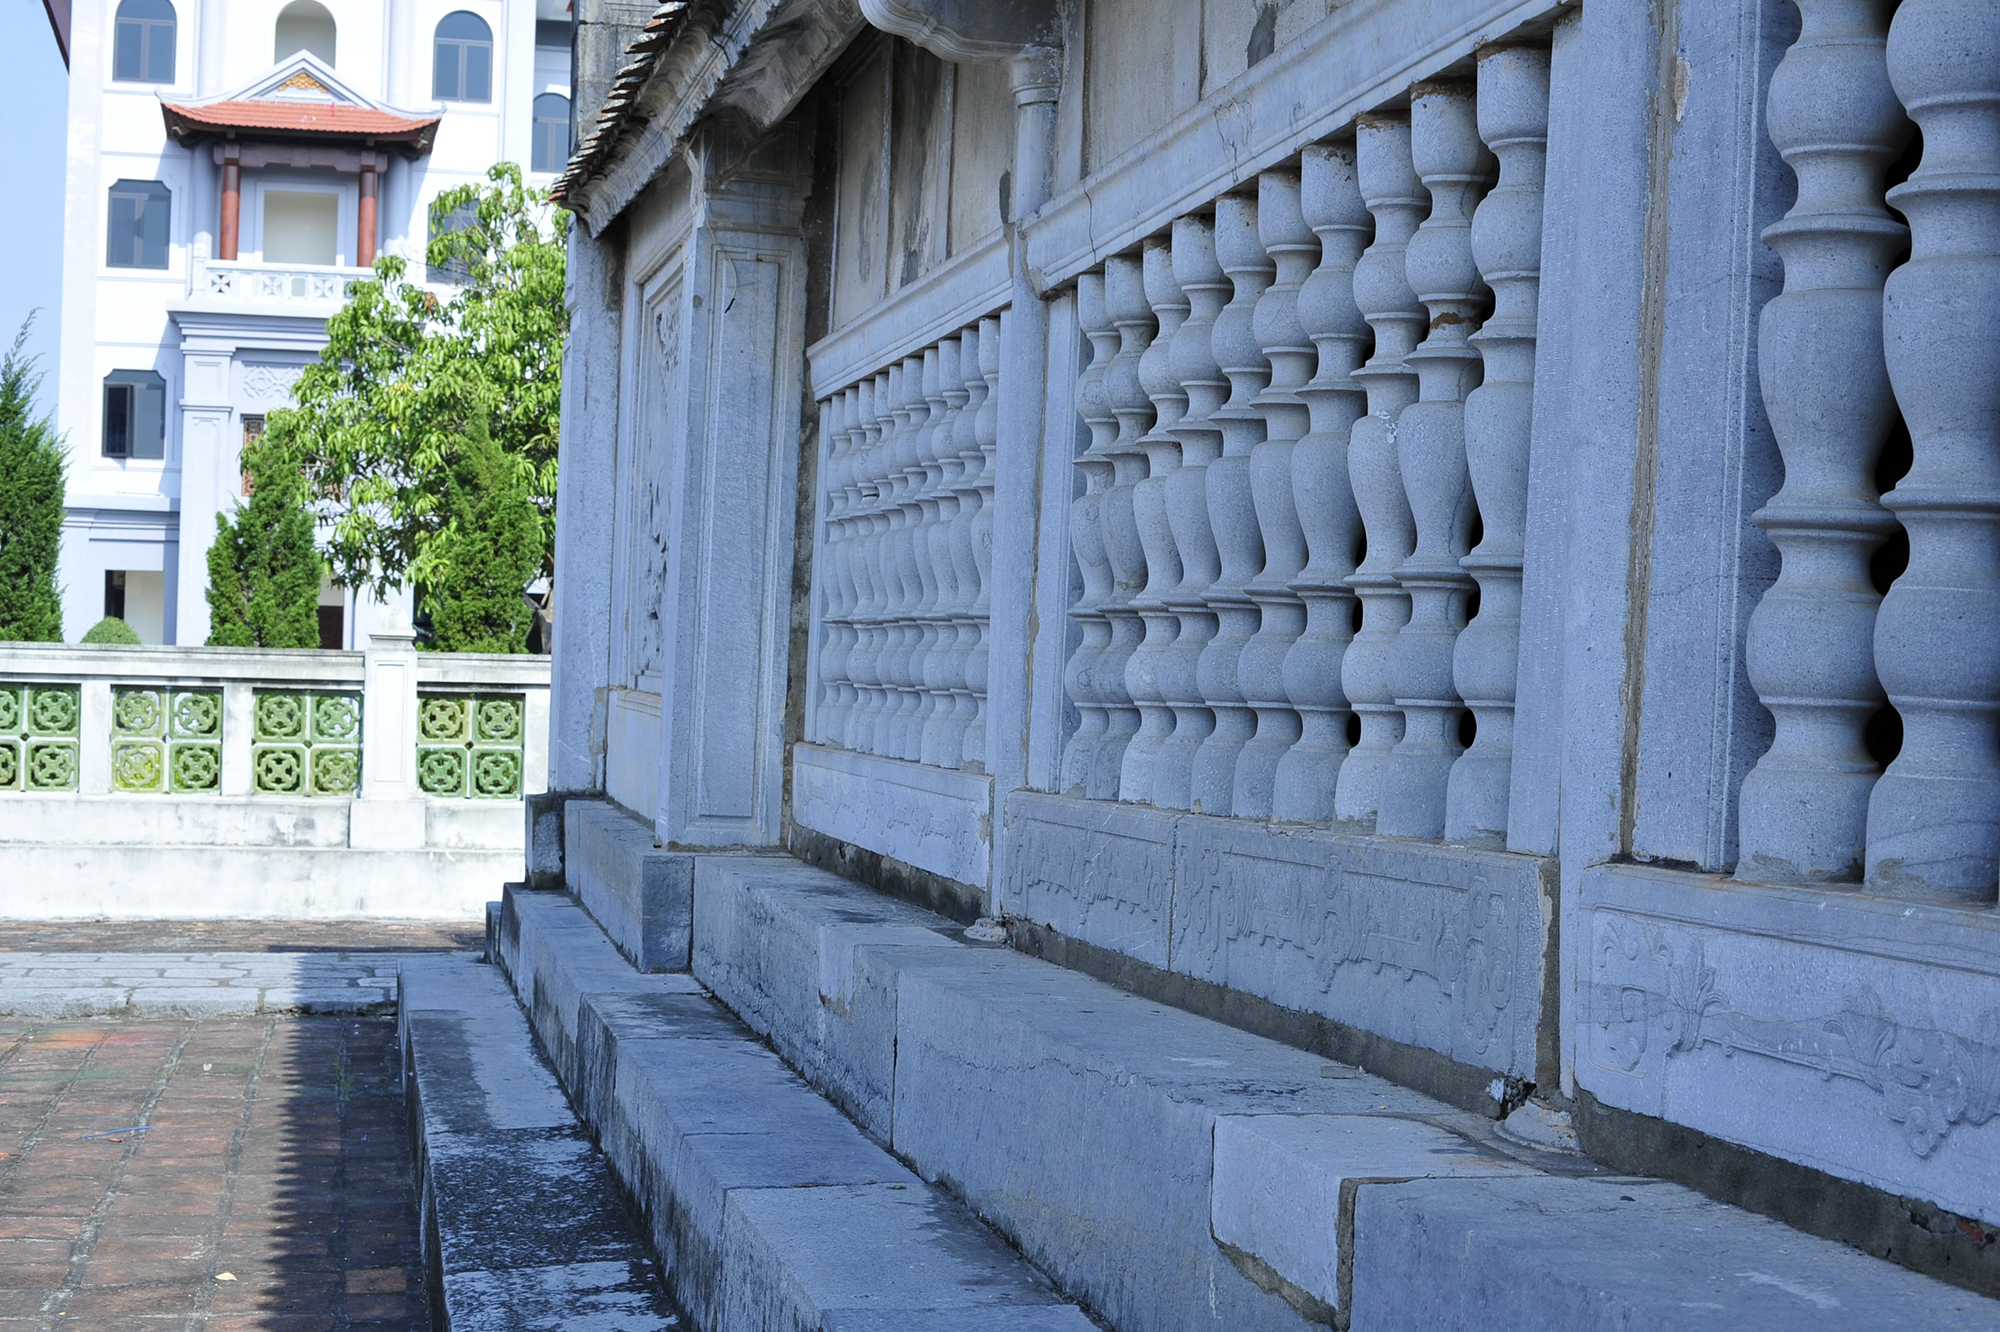 Chiêm ngắm ngôi nhà thờ được làm hoàn toàn bằng đá ở Ninh Bình - Ảnh 14.